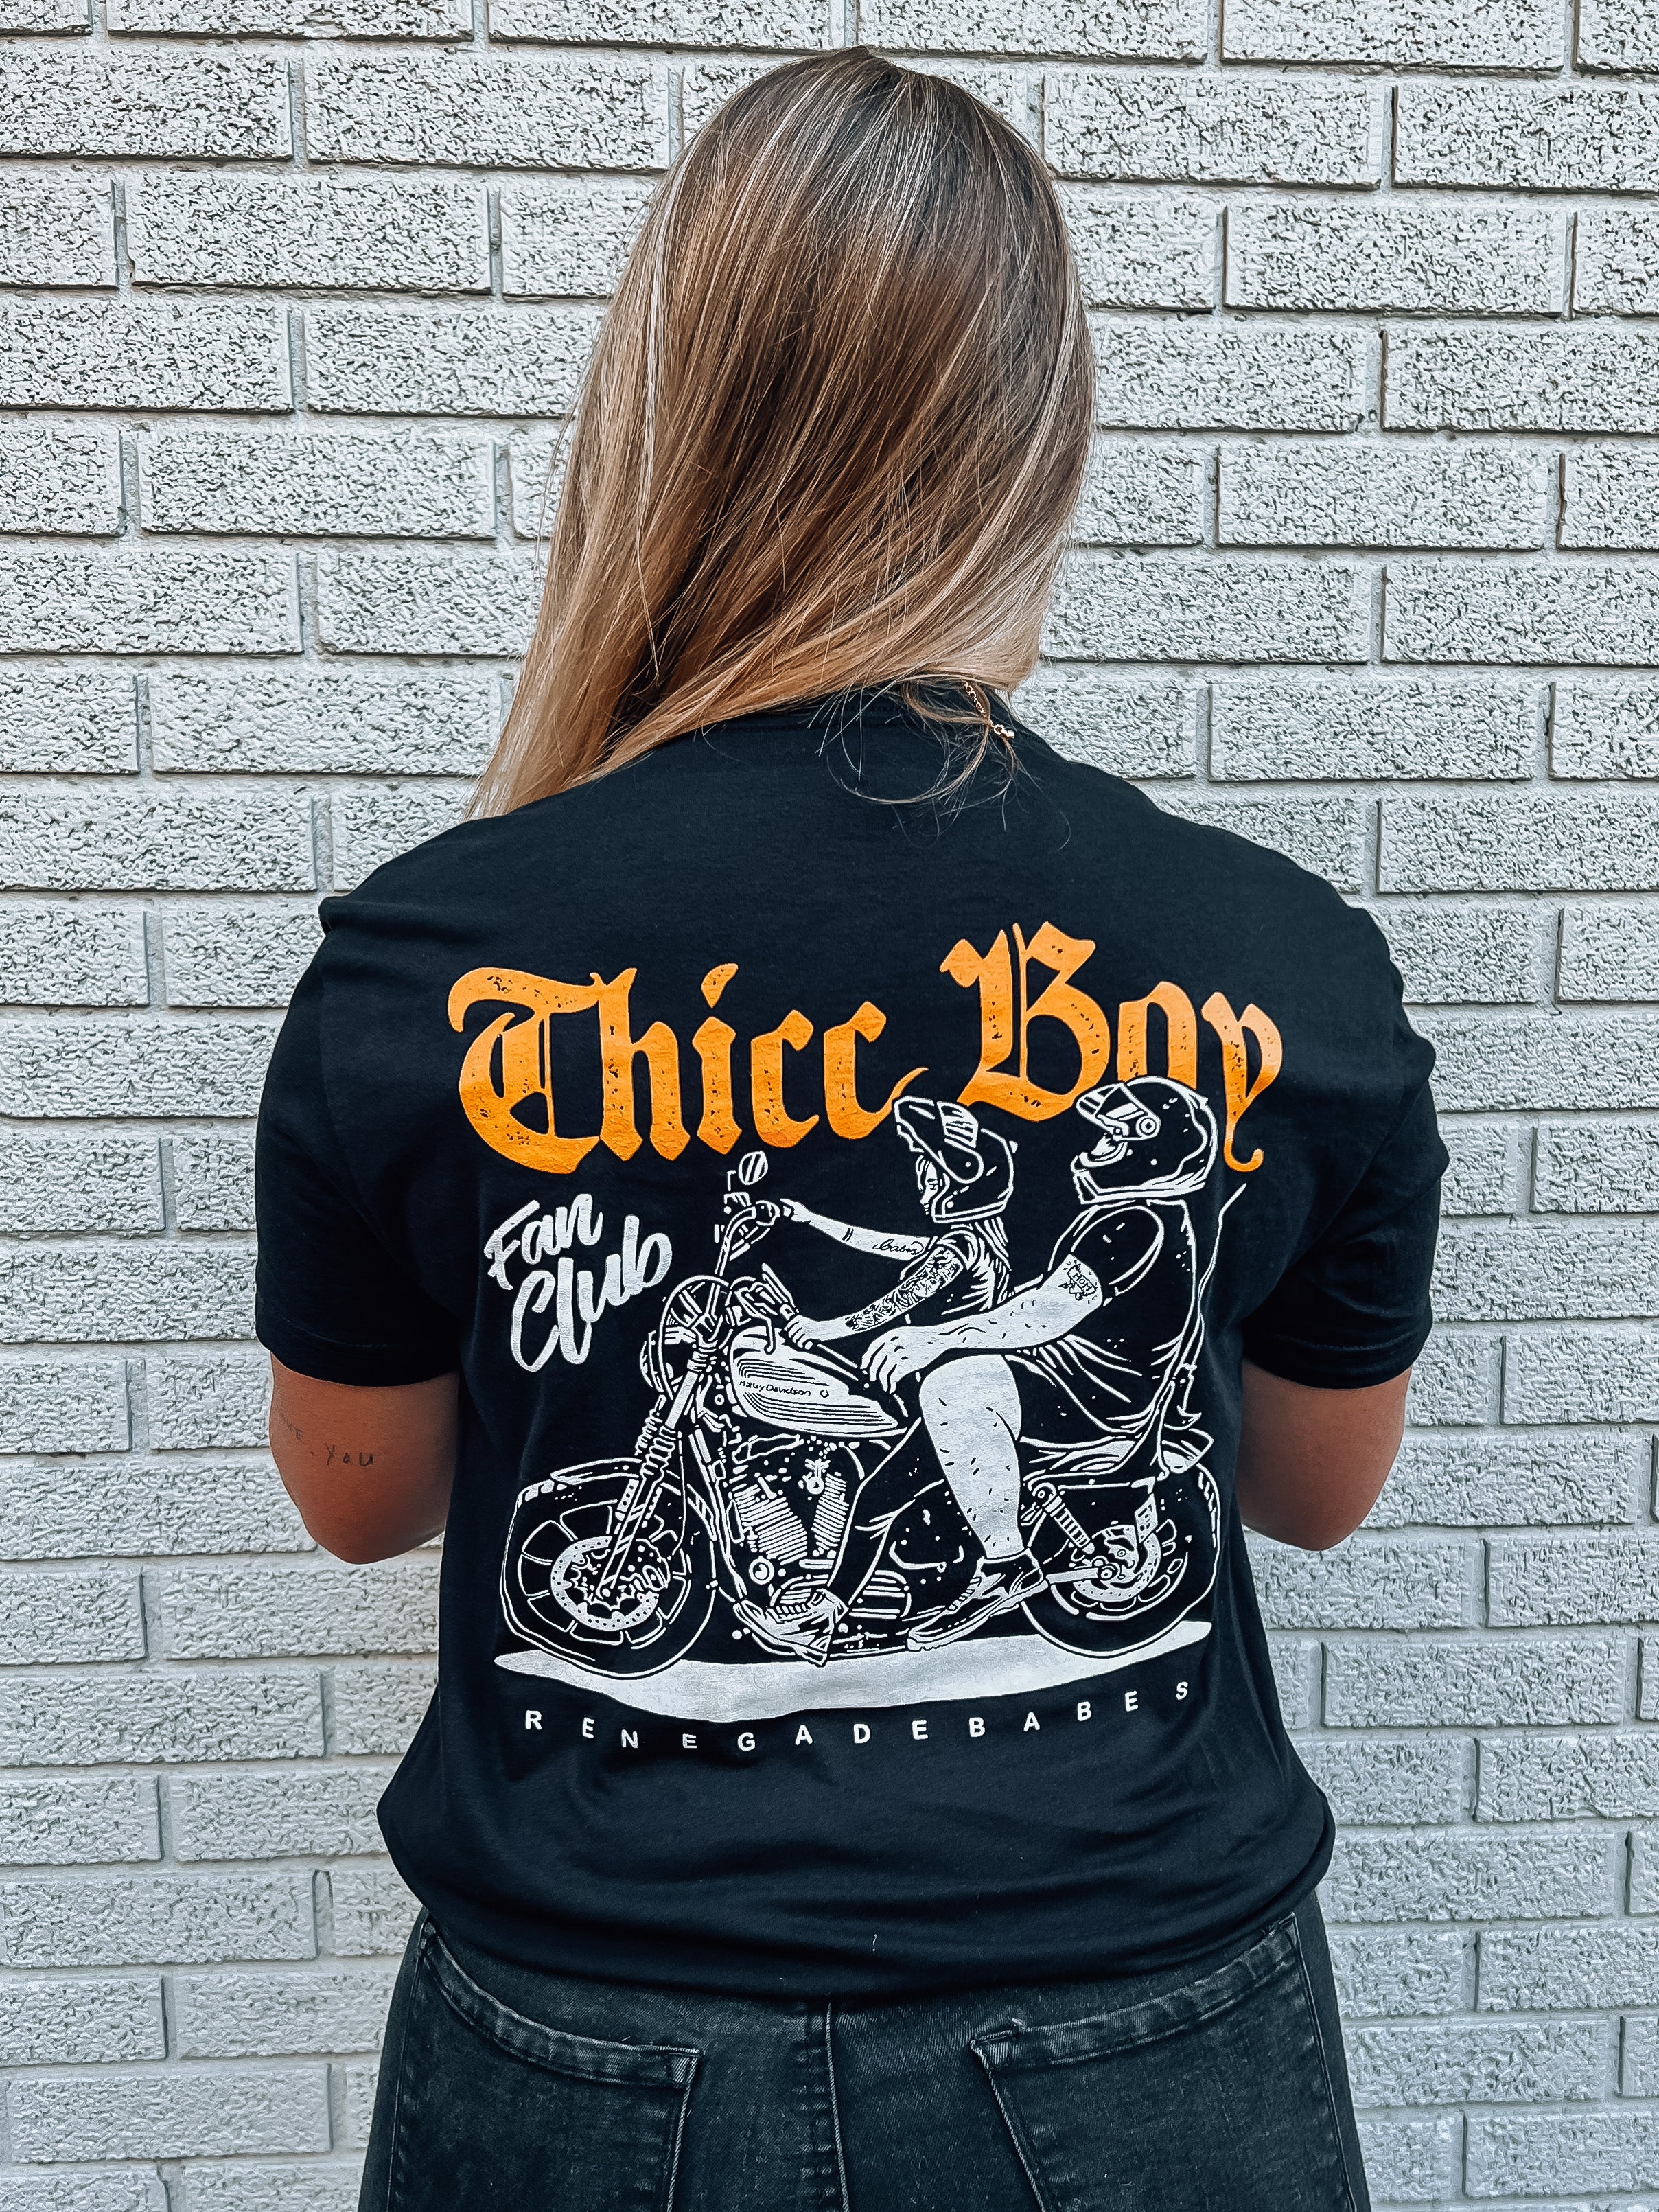 Thicc Boy Fan Club T-Shirt